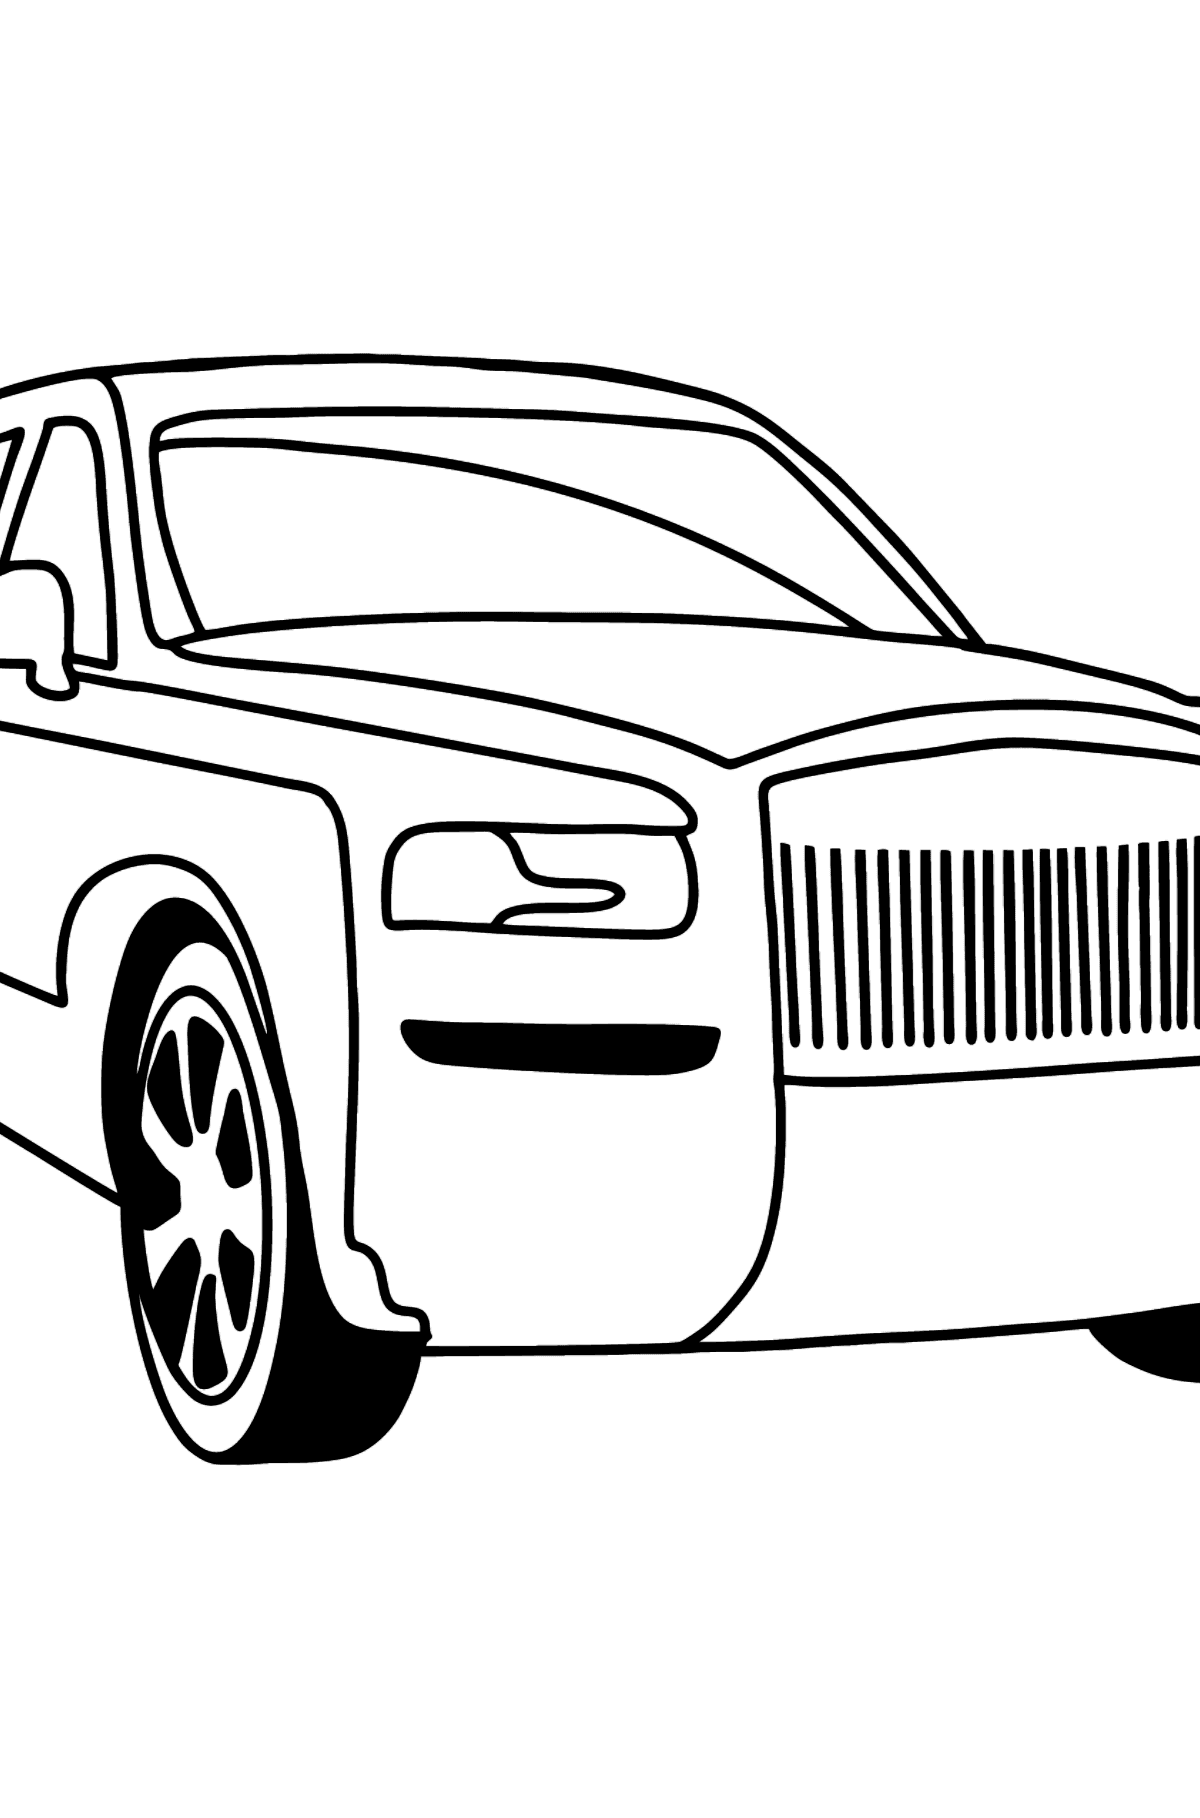 Värityskuva Rolls Royce Cullinan auto - Värityskuvat lapsille